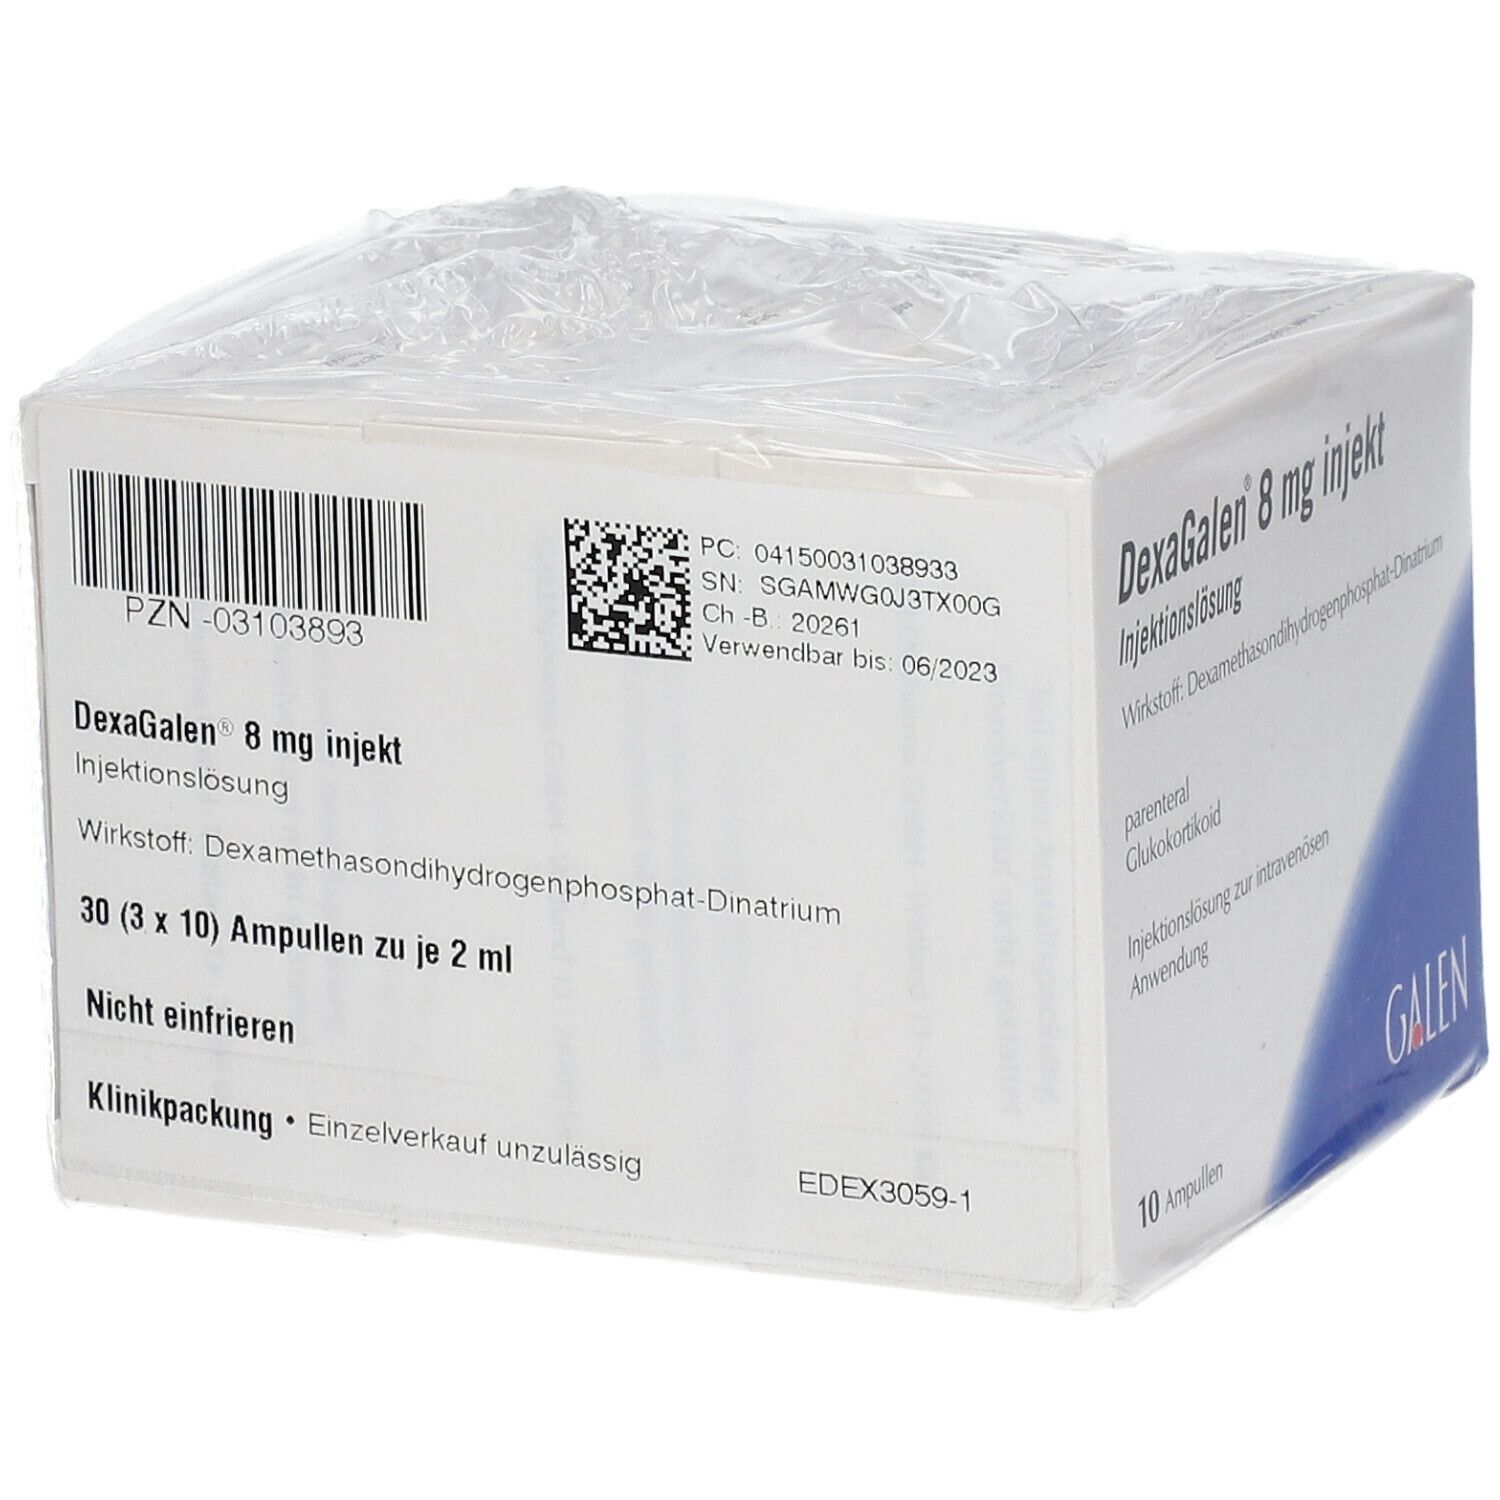 DexaGalen® 8 mg injekt